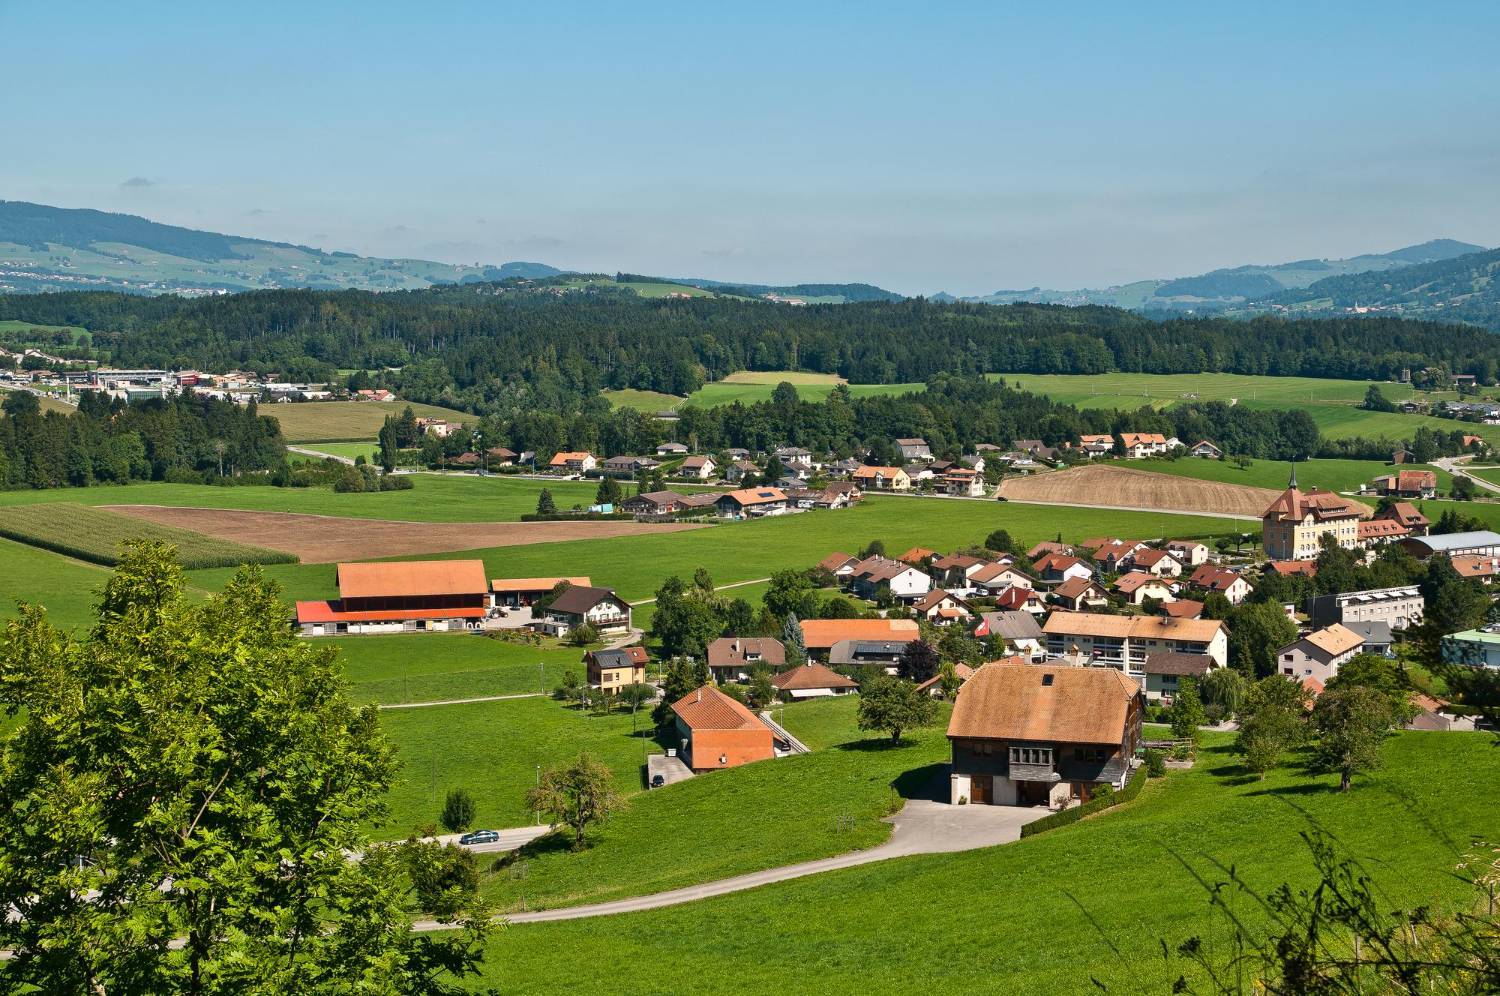 Wunderschöner Ausblick über sein sattes grünes Tal mit gemütlichem Dorf, bei den Schweden Steinen.